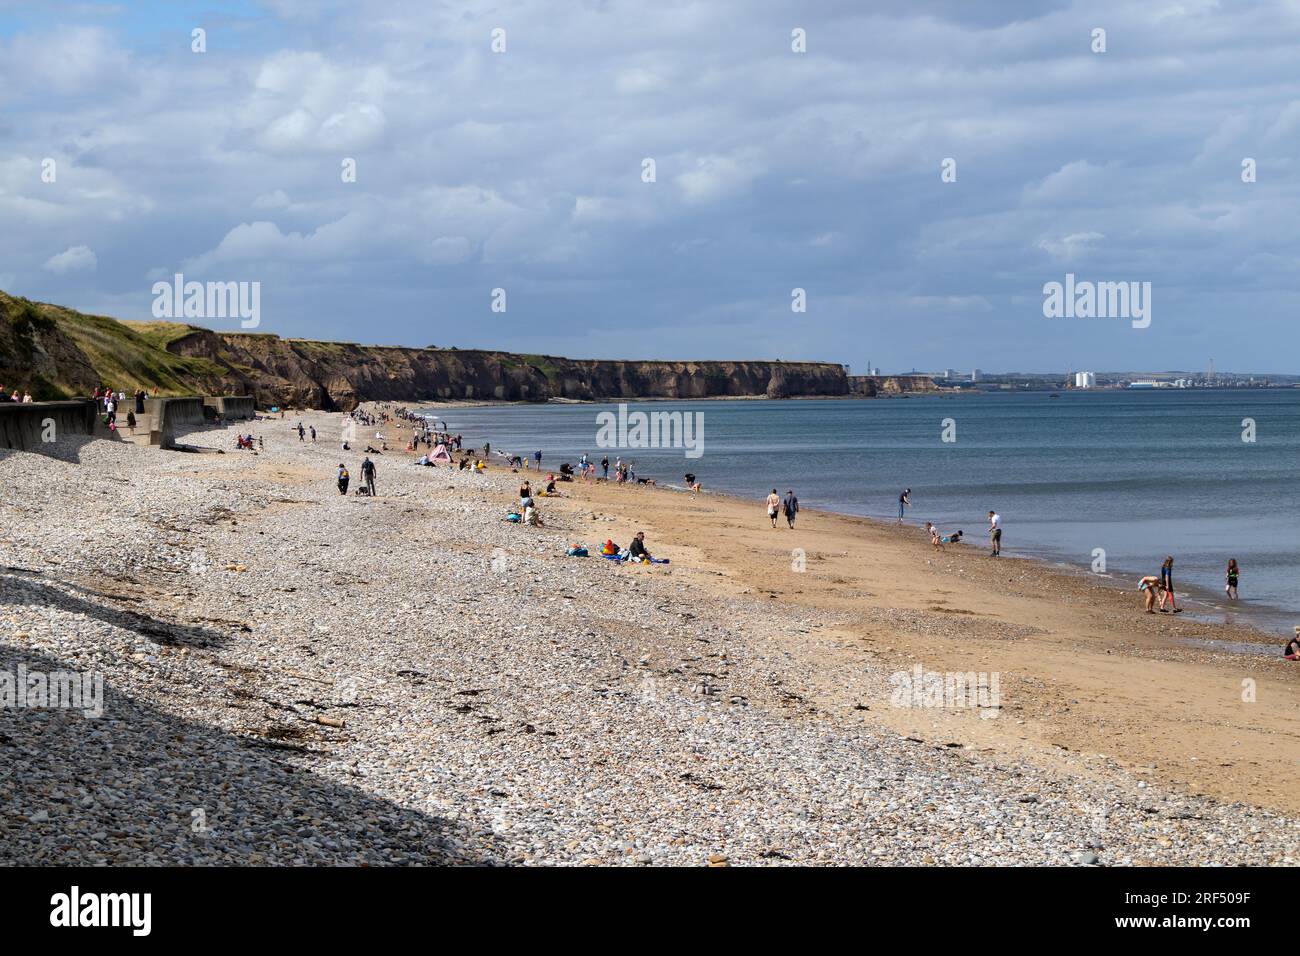 Les gens profitent d'une journée sur la plage de verre de Seaham, également connue sous le nom de plage de Seaham Hall, Seaham, comté de Durham, Royaume-Uni Banque D'Images